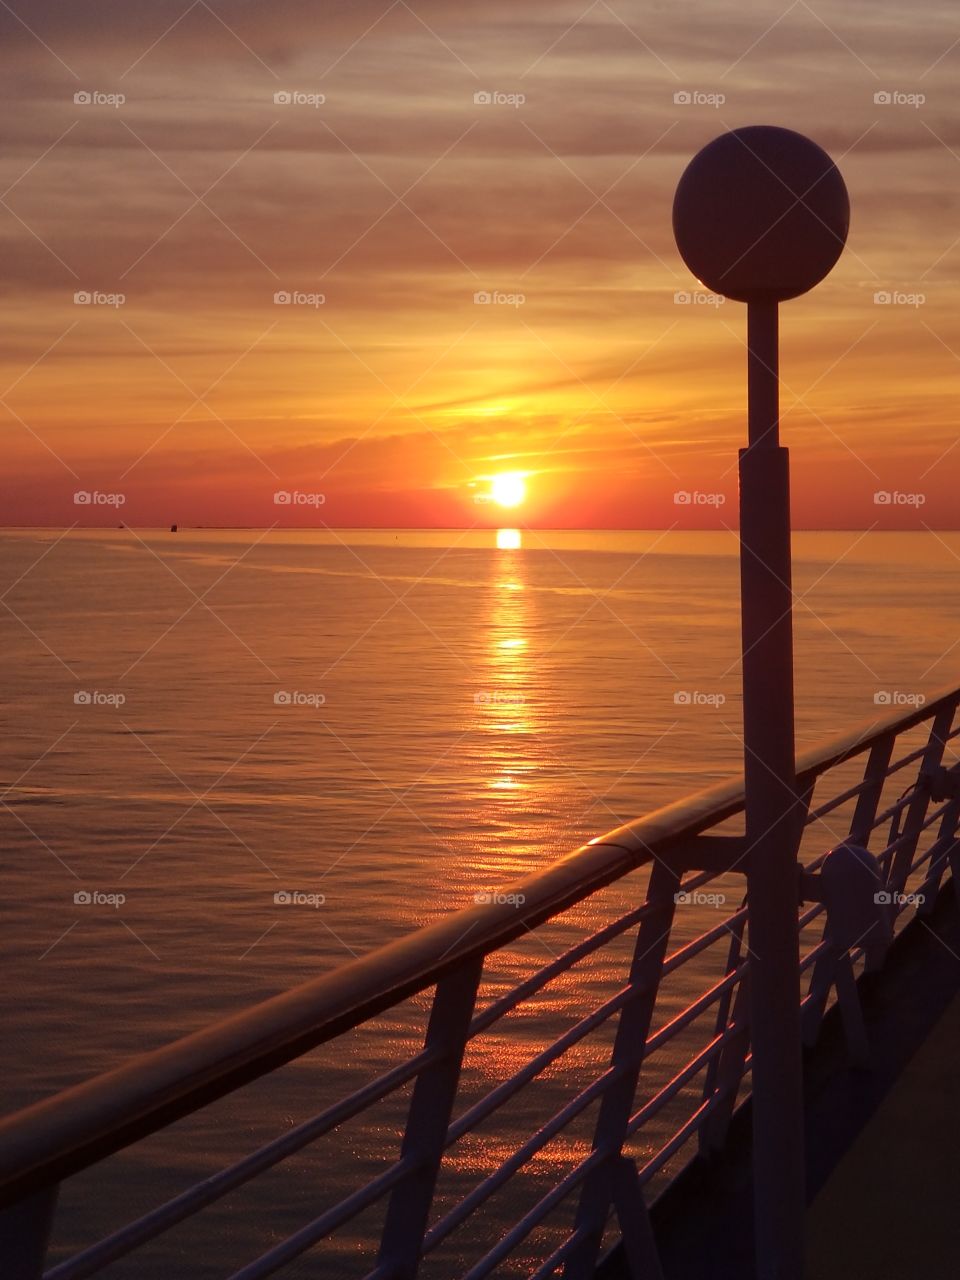 Cruise Sunset